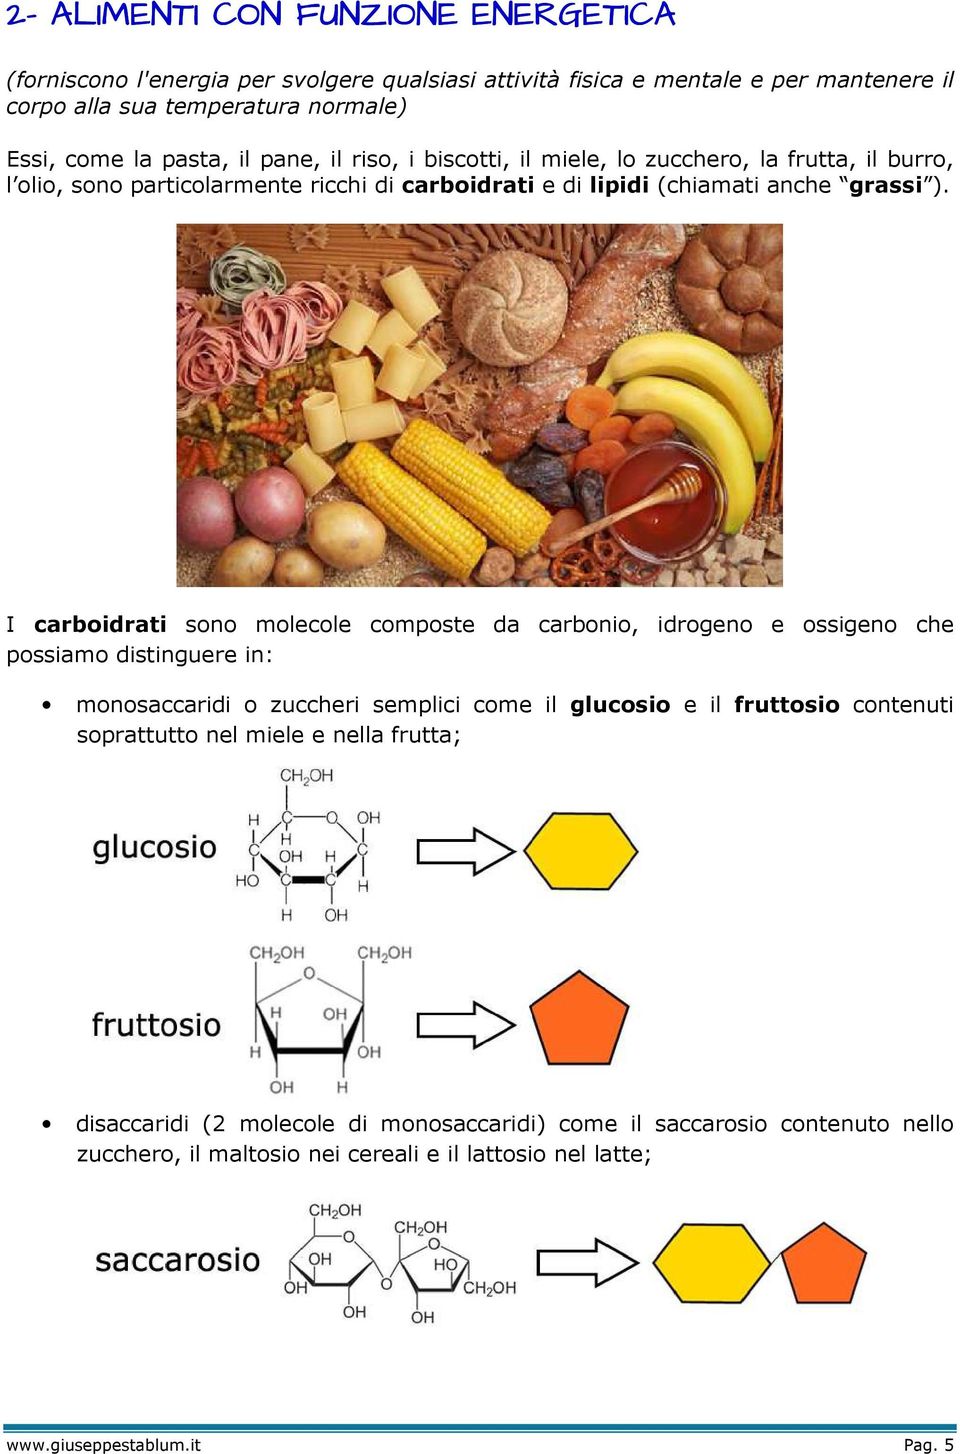 I carboidrati sono molecole composte da carbonio, idrogeno e ossigeno che possiamo distinguere in: monosaccaridi o zuccheri semplici come il glucosio e il fruttosio contenuti